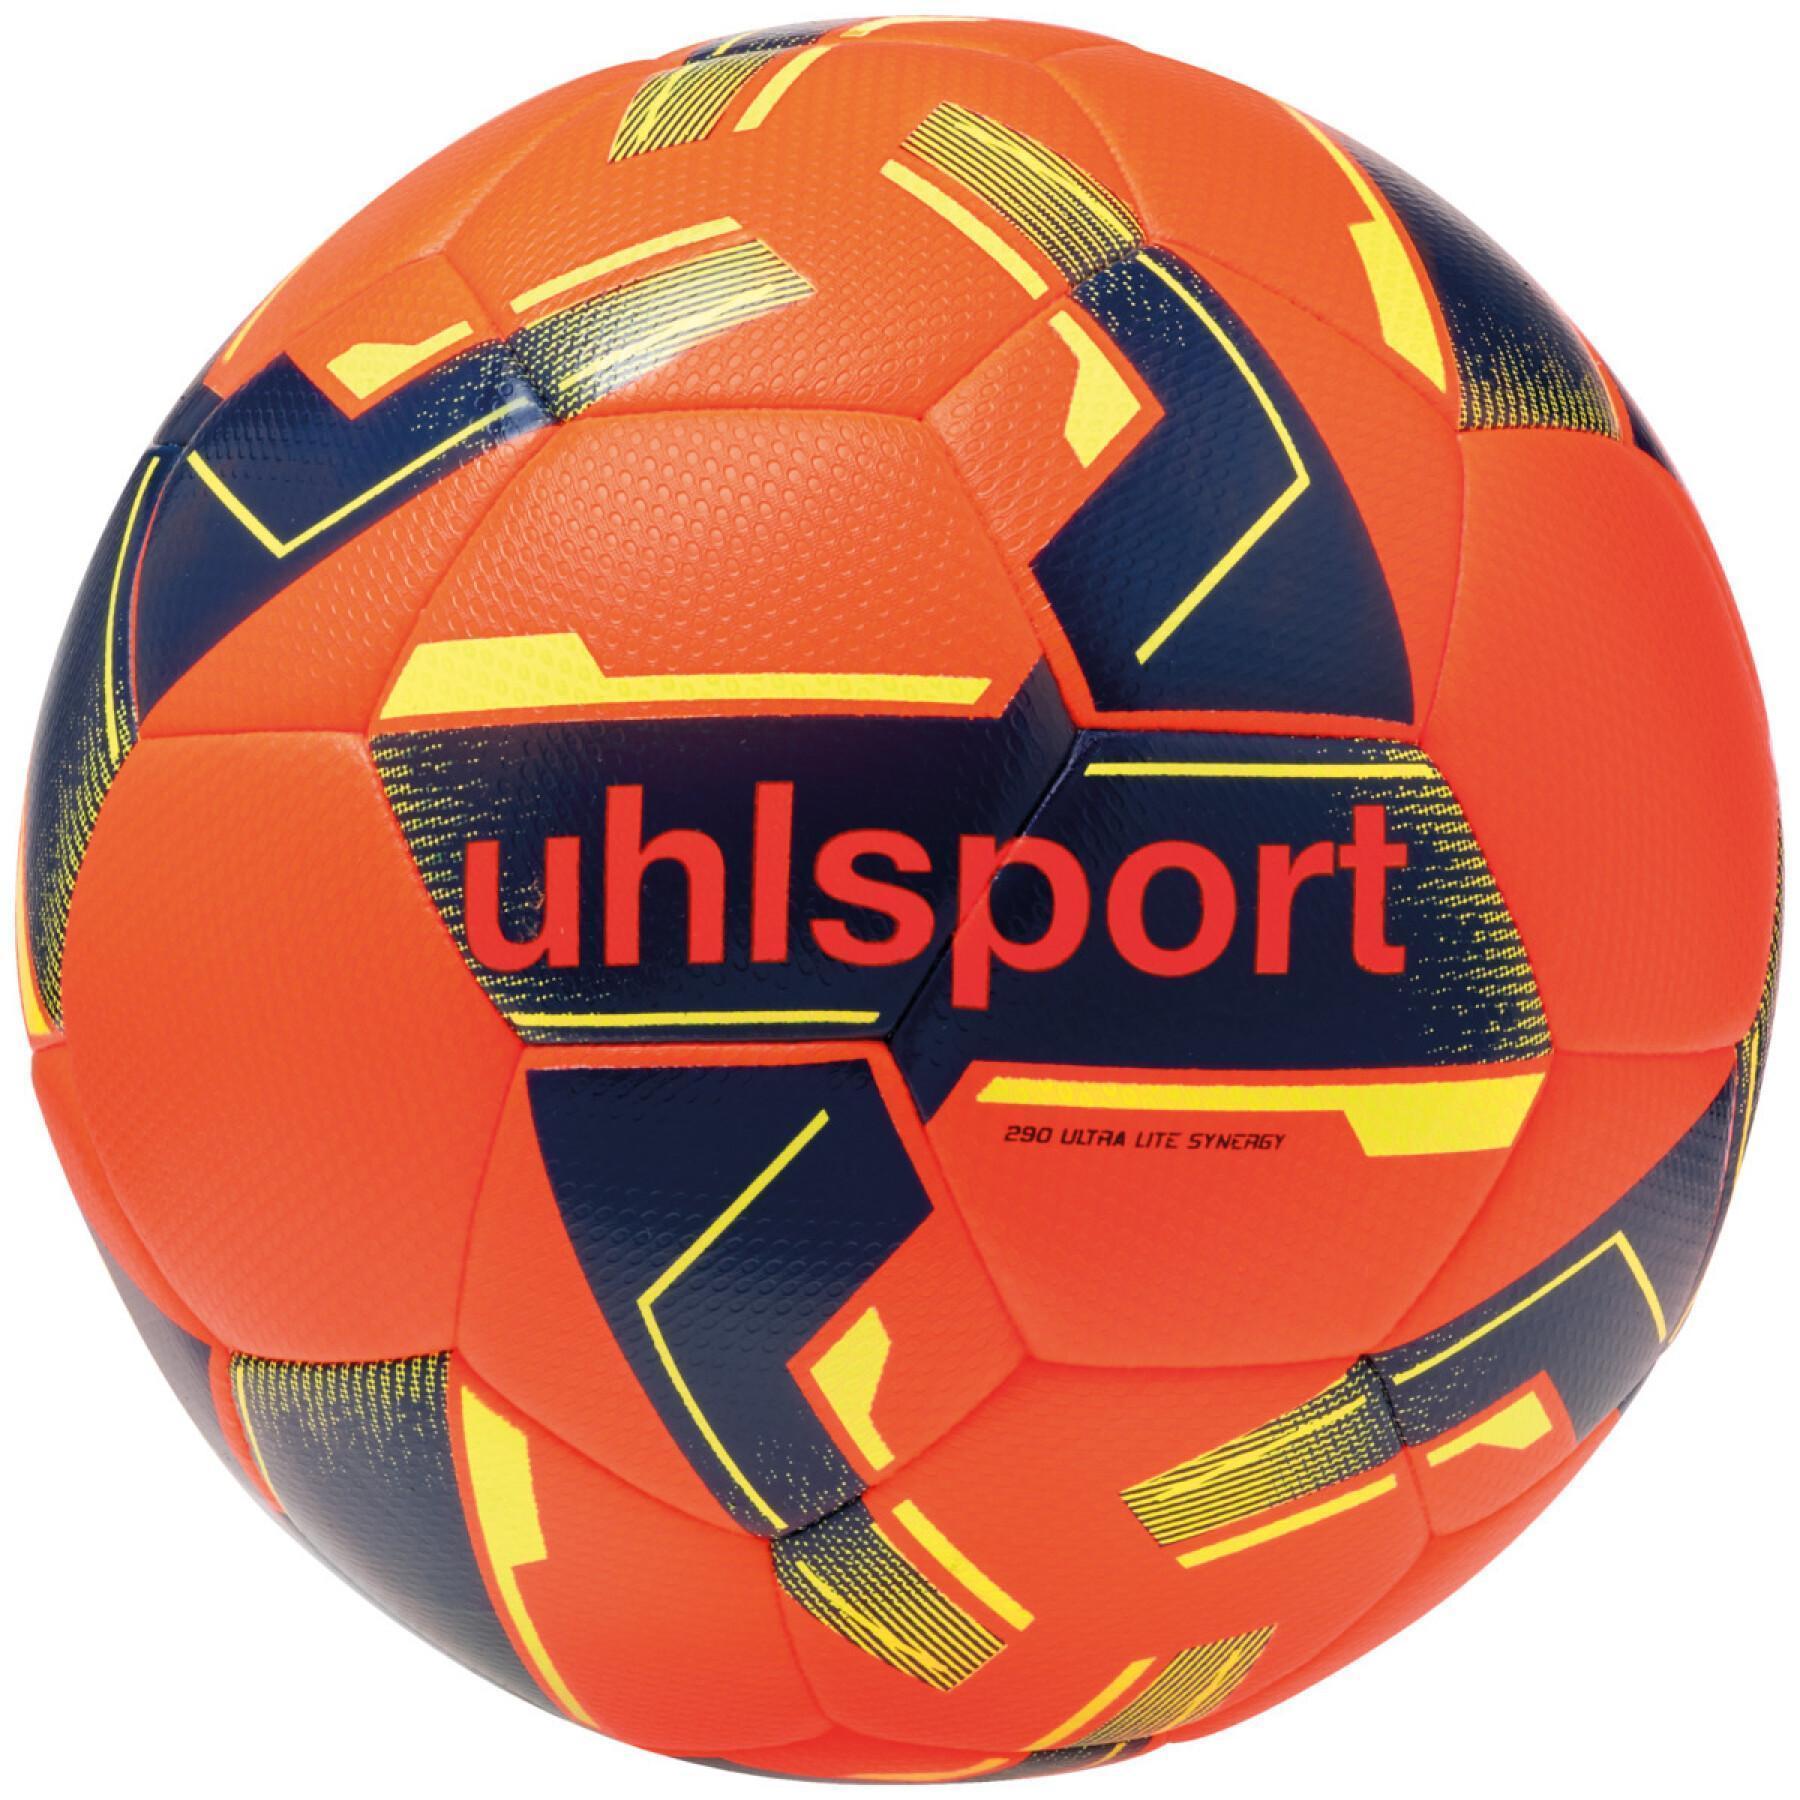 Football children Uhlsport 290 Ultra Lite Synergy